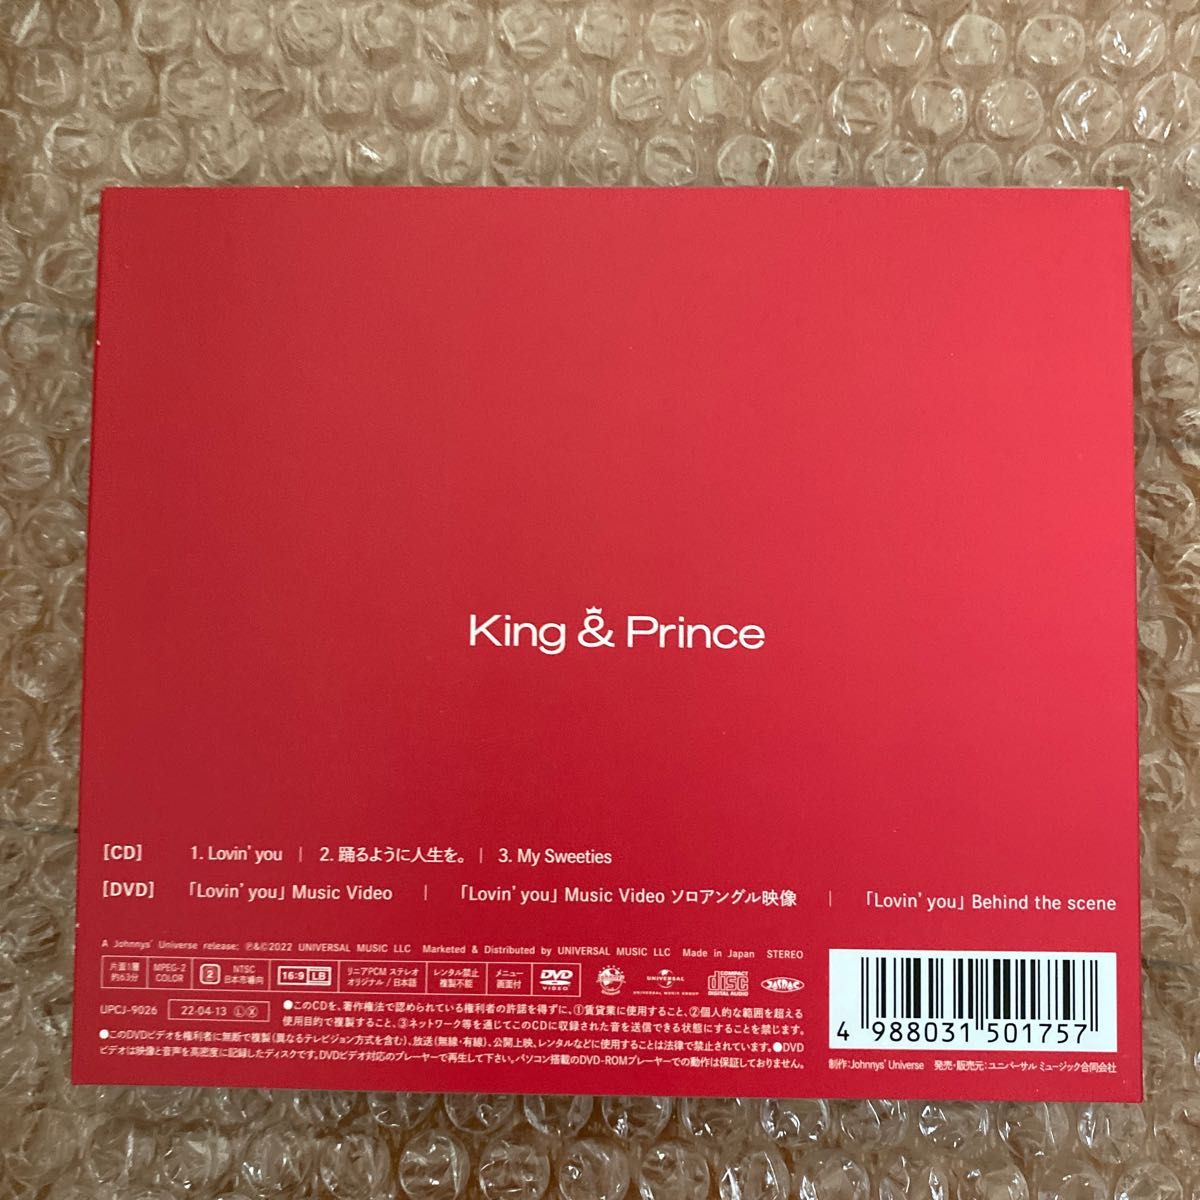 【特典付き3形態セット】Lovin you/踊るように人生を。 (初回限定盤A+B+通常盤) King & Prince 